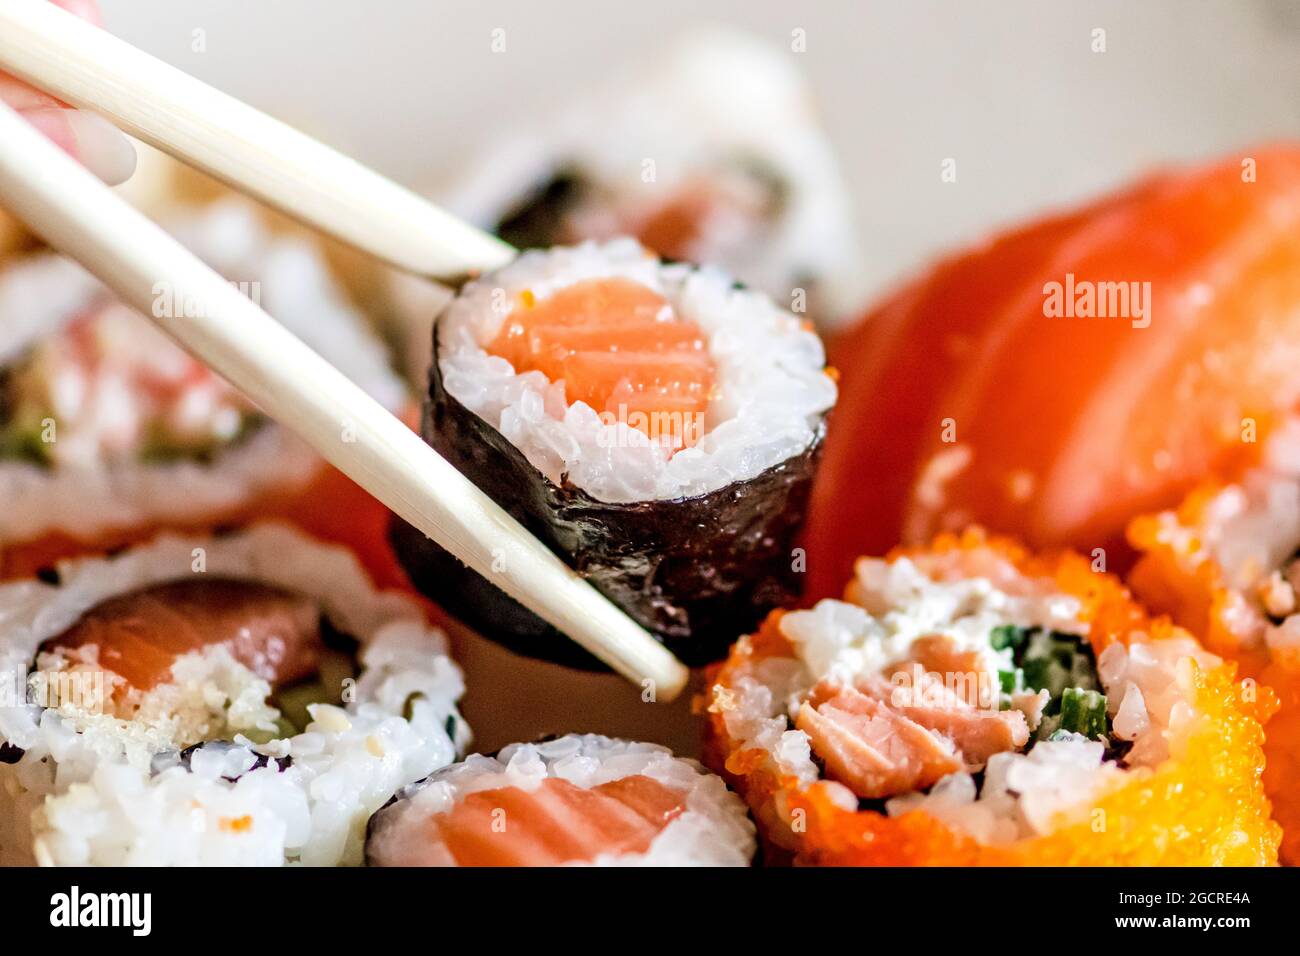 Mangiare vari sushi. Maki, uramaki, hosomaki, sahimi e nigiri in un piatto con bacchette di bambù, primo piano Foto Stock